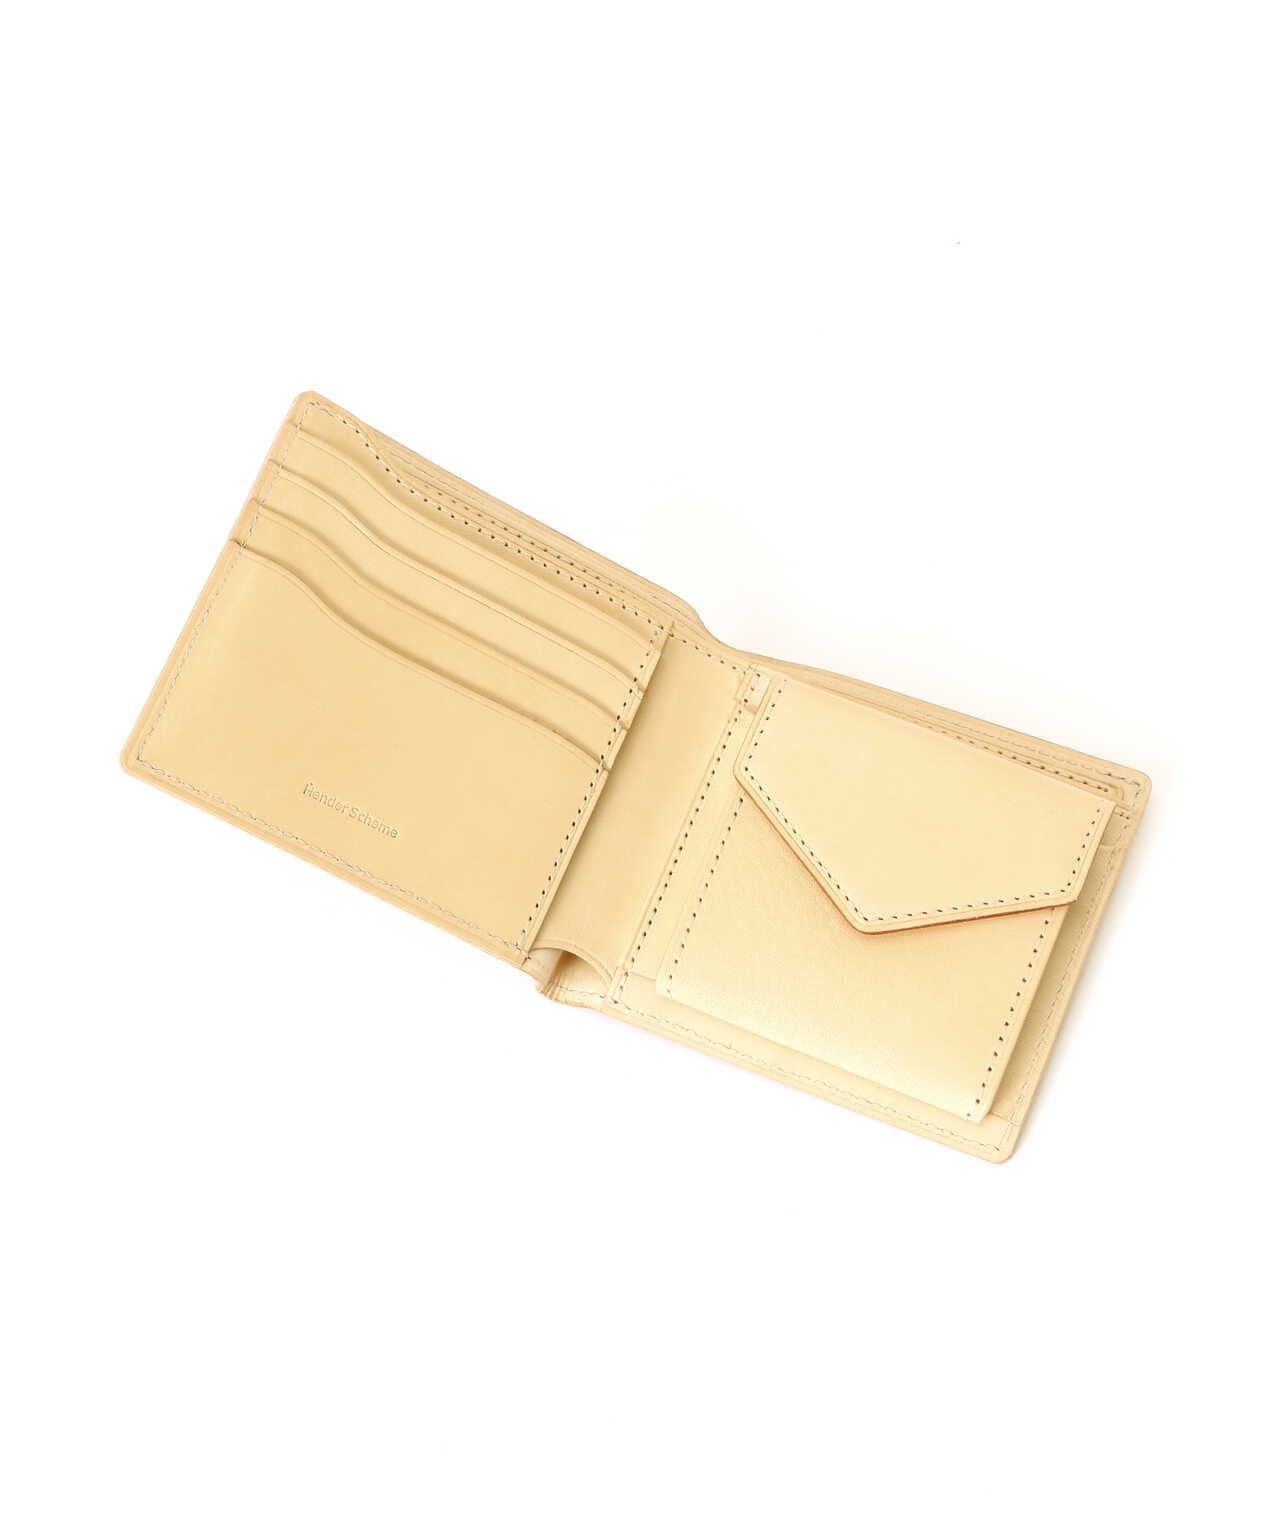 Hender Scheme /エンダースキーマ/half folded wallet | GARDEN 